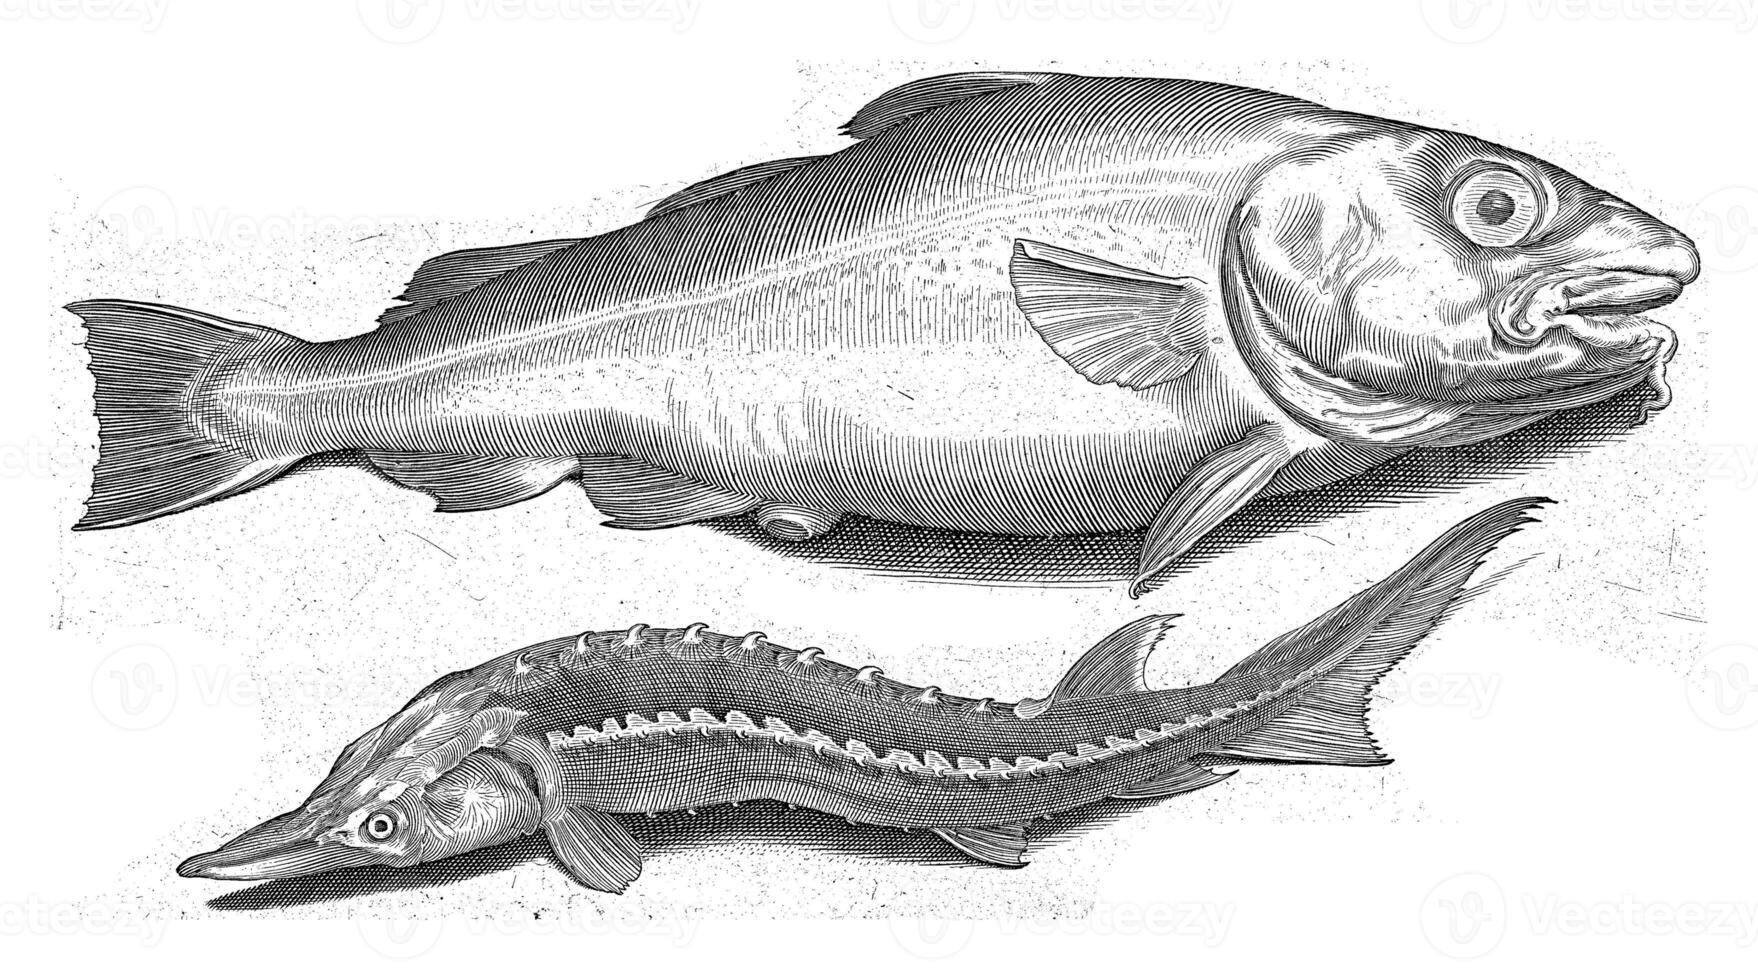 bacalao y esturión, nicolas Delaware bruyn, 1581 - 1656 foto